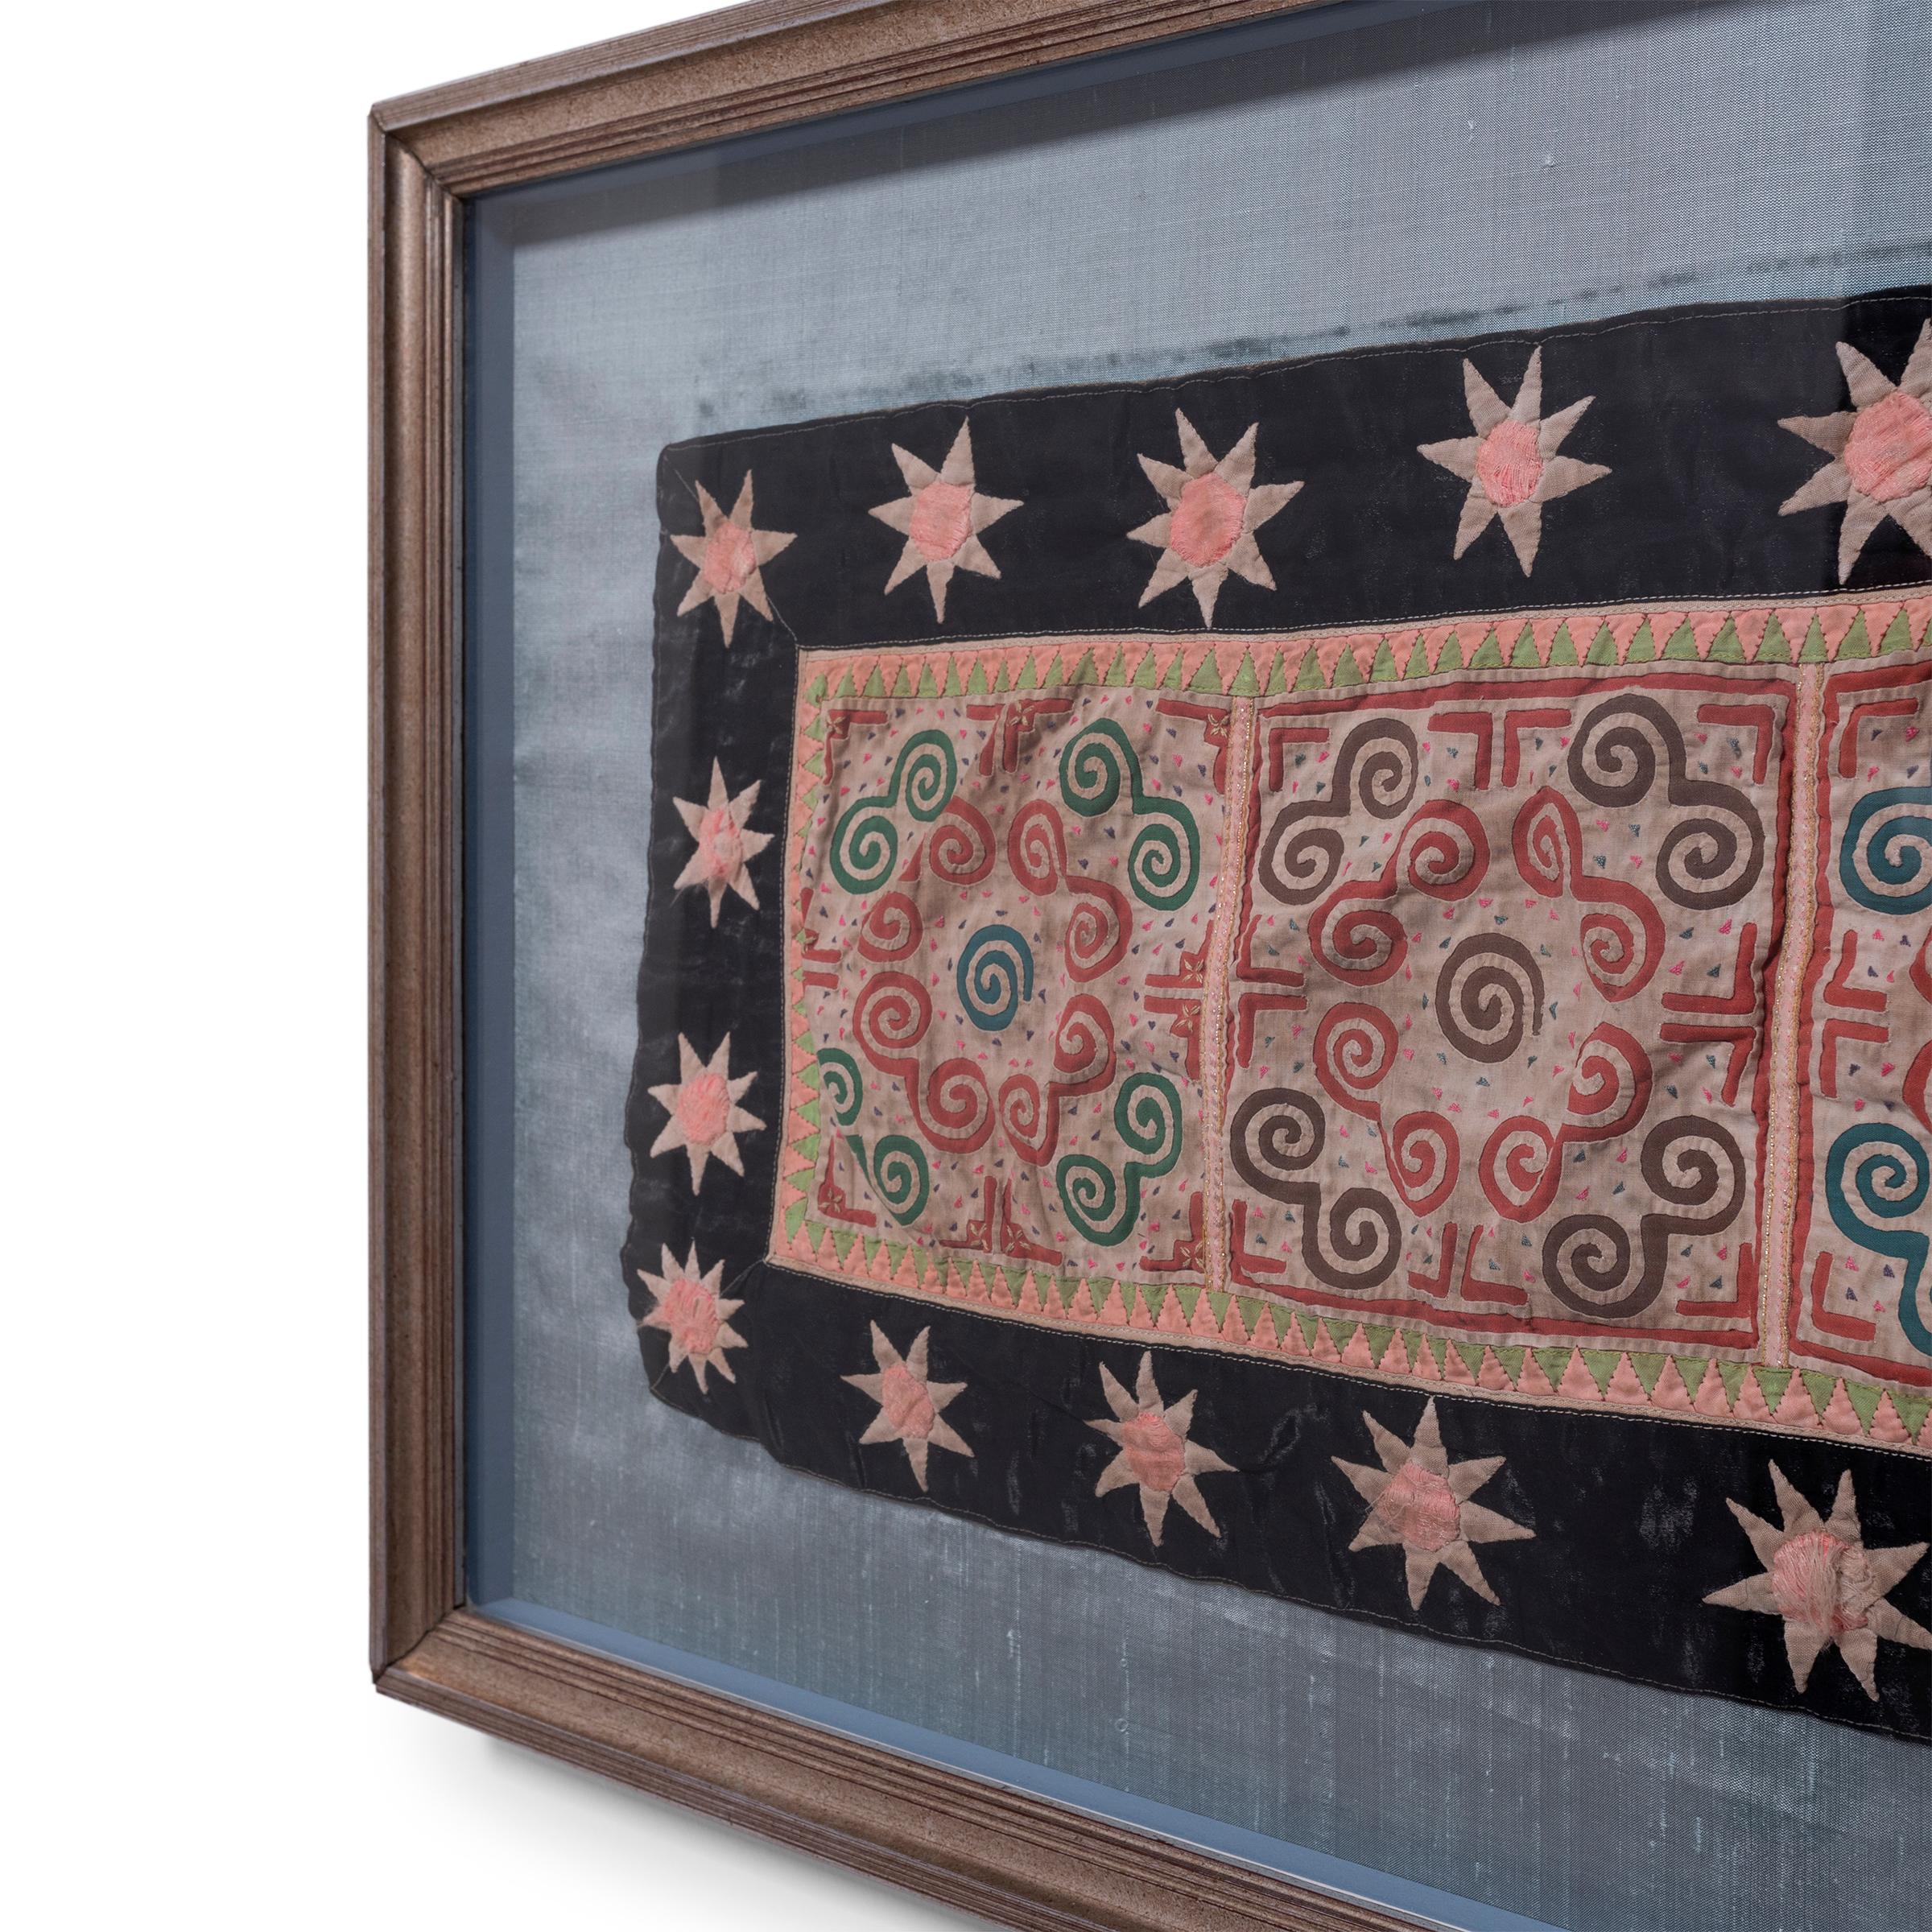 Dieses farbenfrohe Hmong-Textil aus der Mitte des 20. Jahrhunderts ist ein klassisches Beispiel für die Appliqué-Technik, die für das als paj ntaub bekannte traditionelle Tuch verwendet wird. Beim Applizieren werden Stoffstücke auf ein anderes Stück